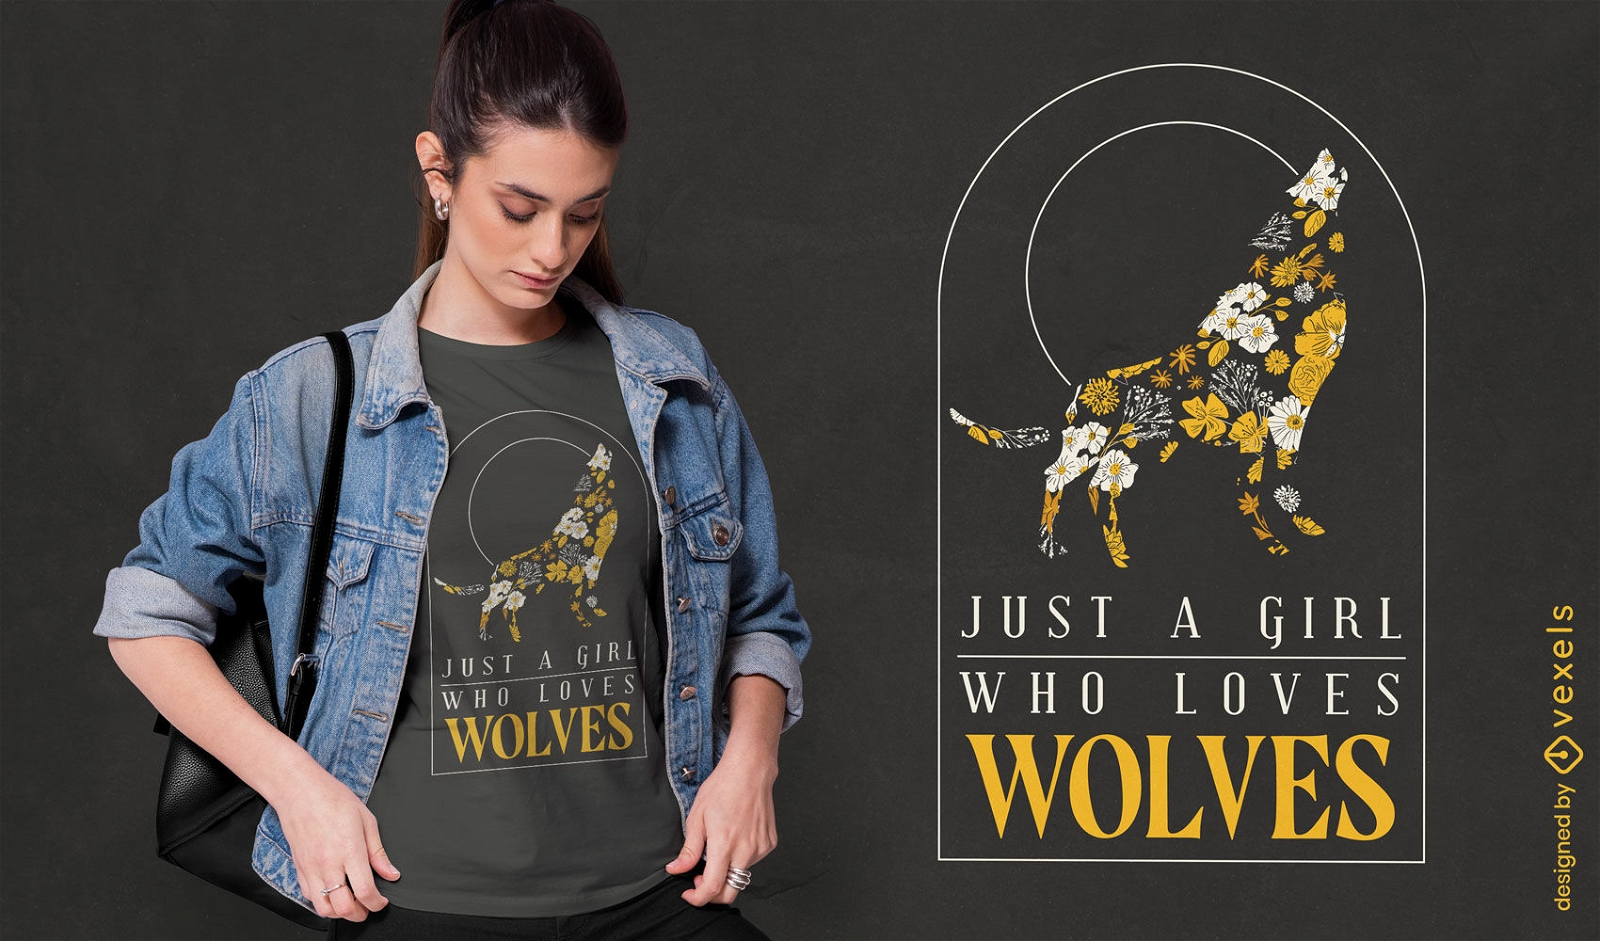 Wolf lover girl t-shirt design